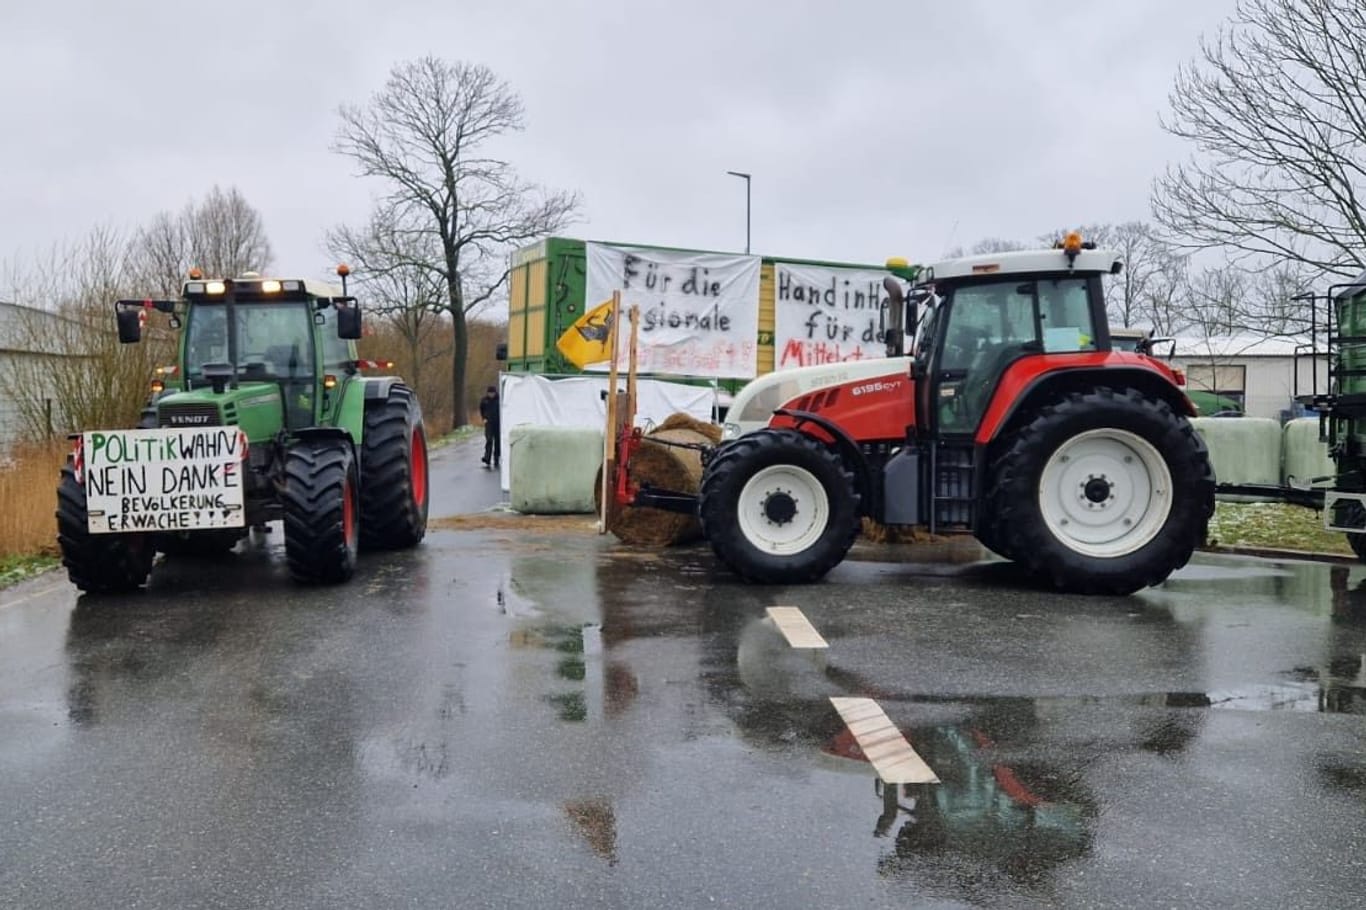 Landwirte blockieren eine Zufahrt zum Industriegebiet in Brunsbüttel: Die Polizei ist zum Gespräch vor Ort.